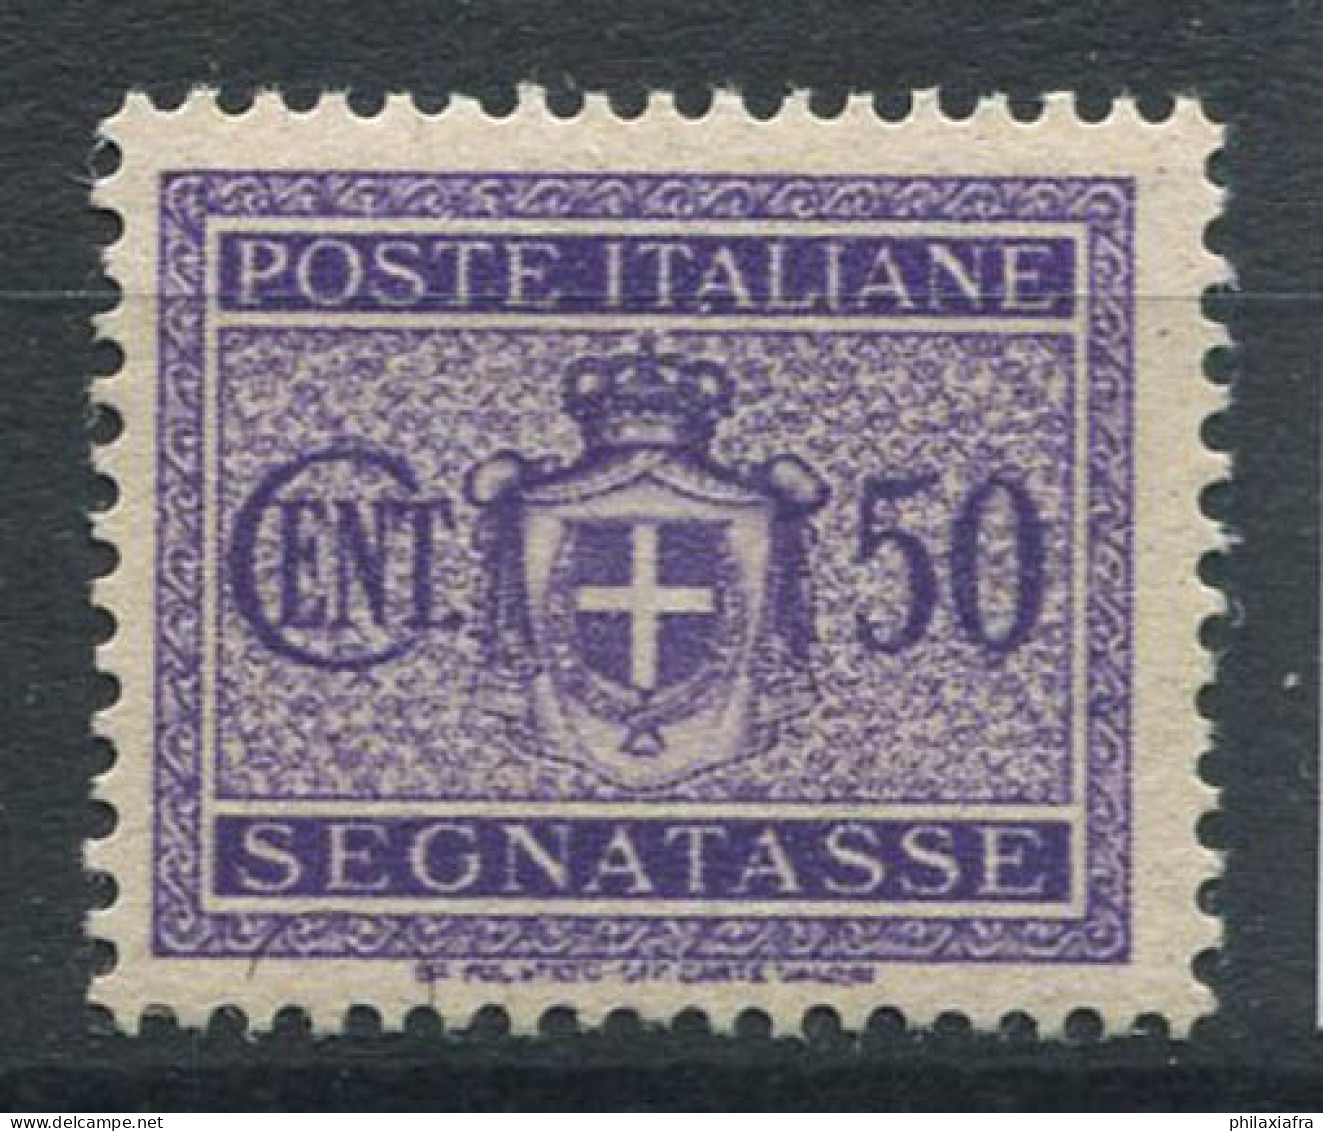 Italie Lieutenance 1945 Sass. 90 Neuf ** 80% Timbre-taxe 50 Cent. - Neufs